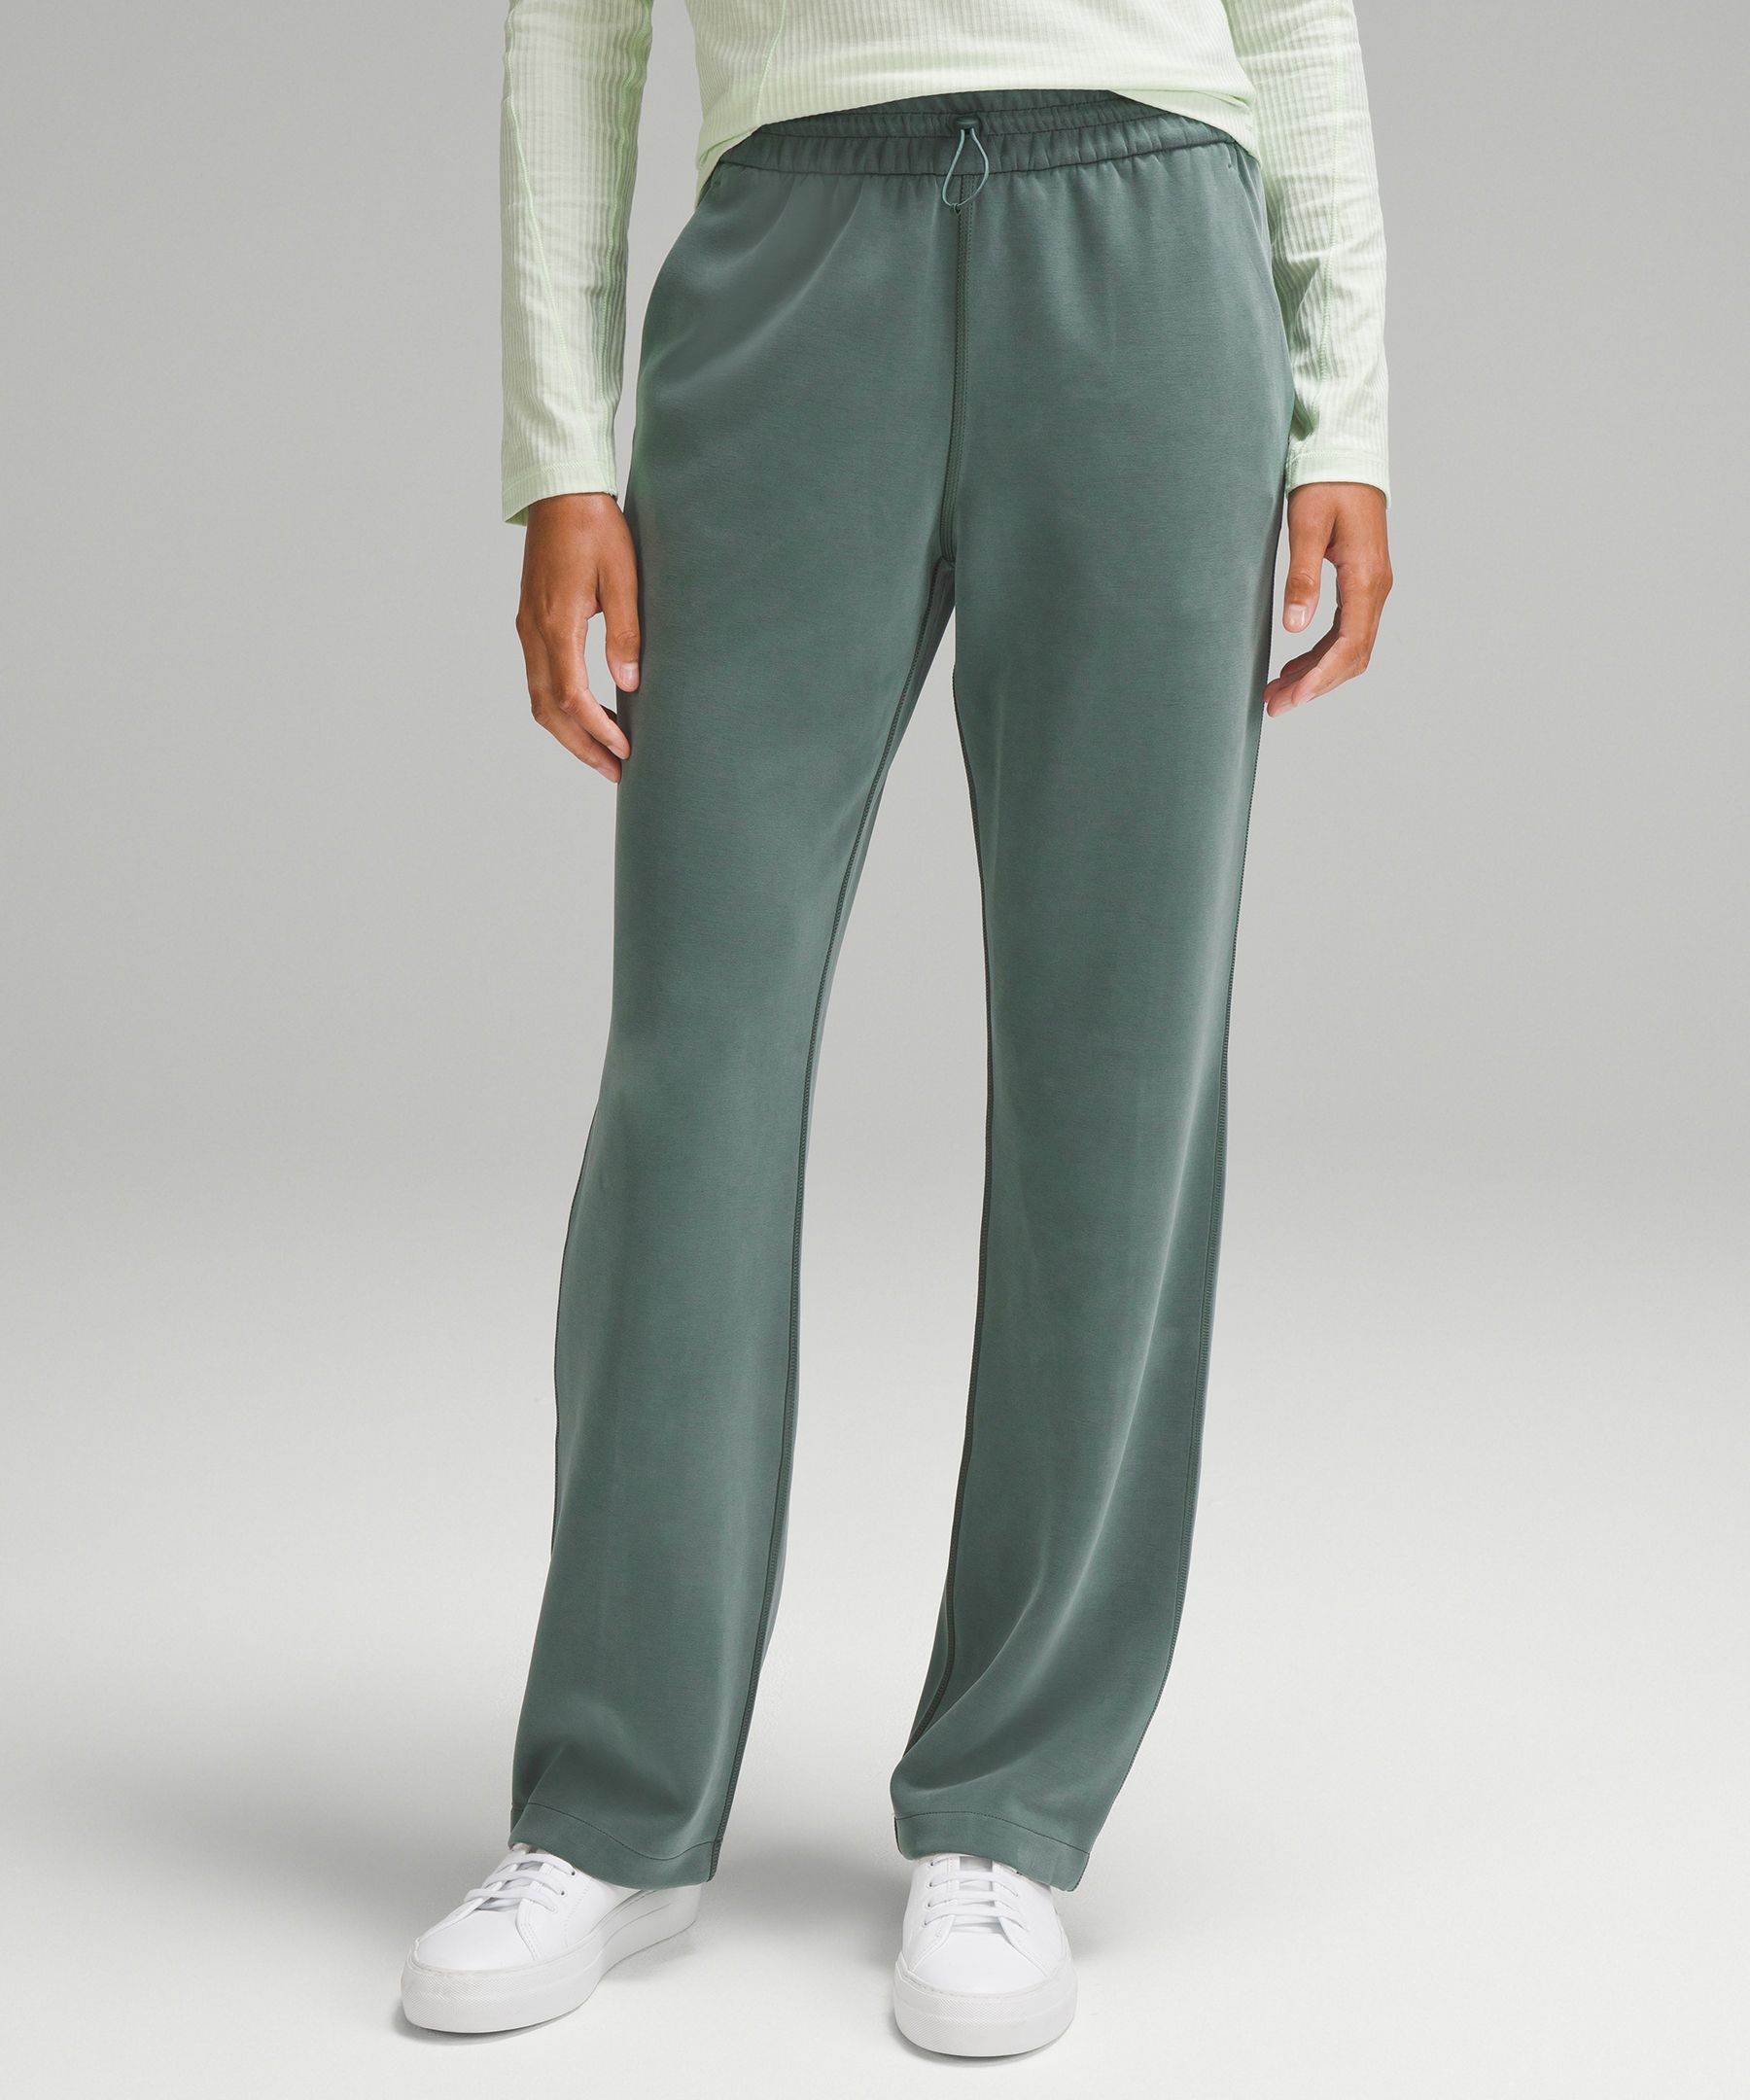 The best  lululemon softstream pants! 🔗 on amzn under “INSPIRED